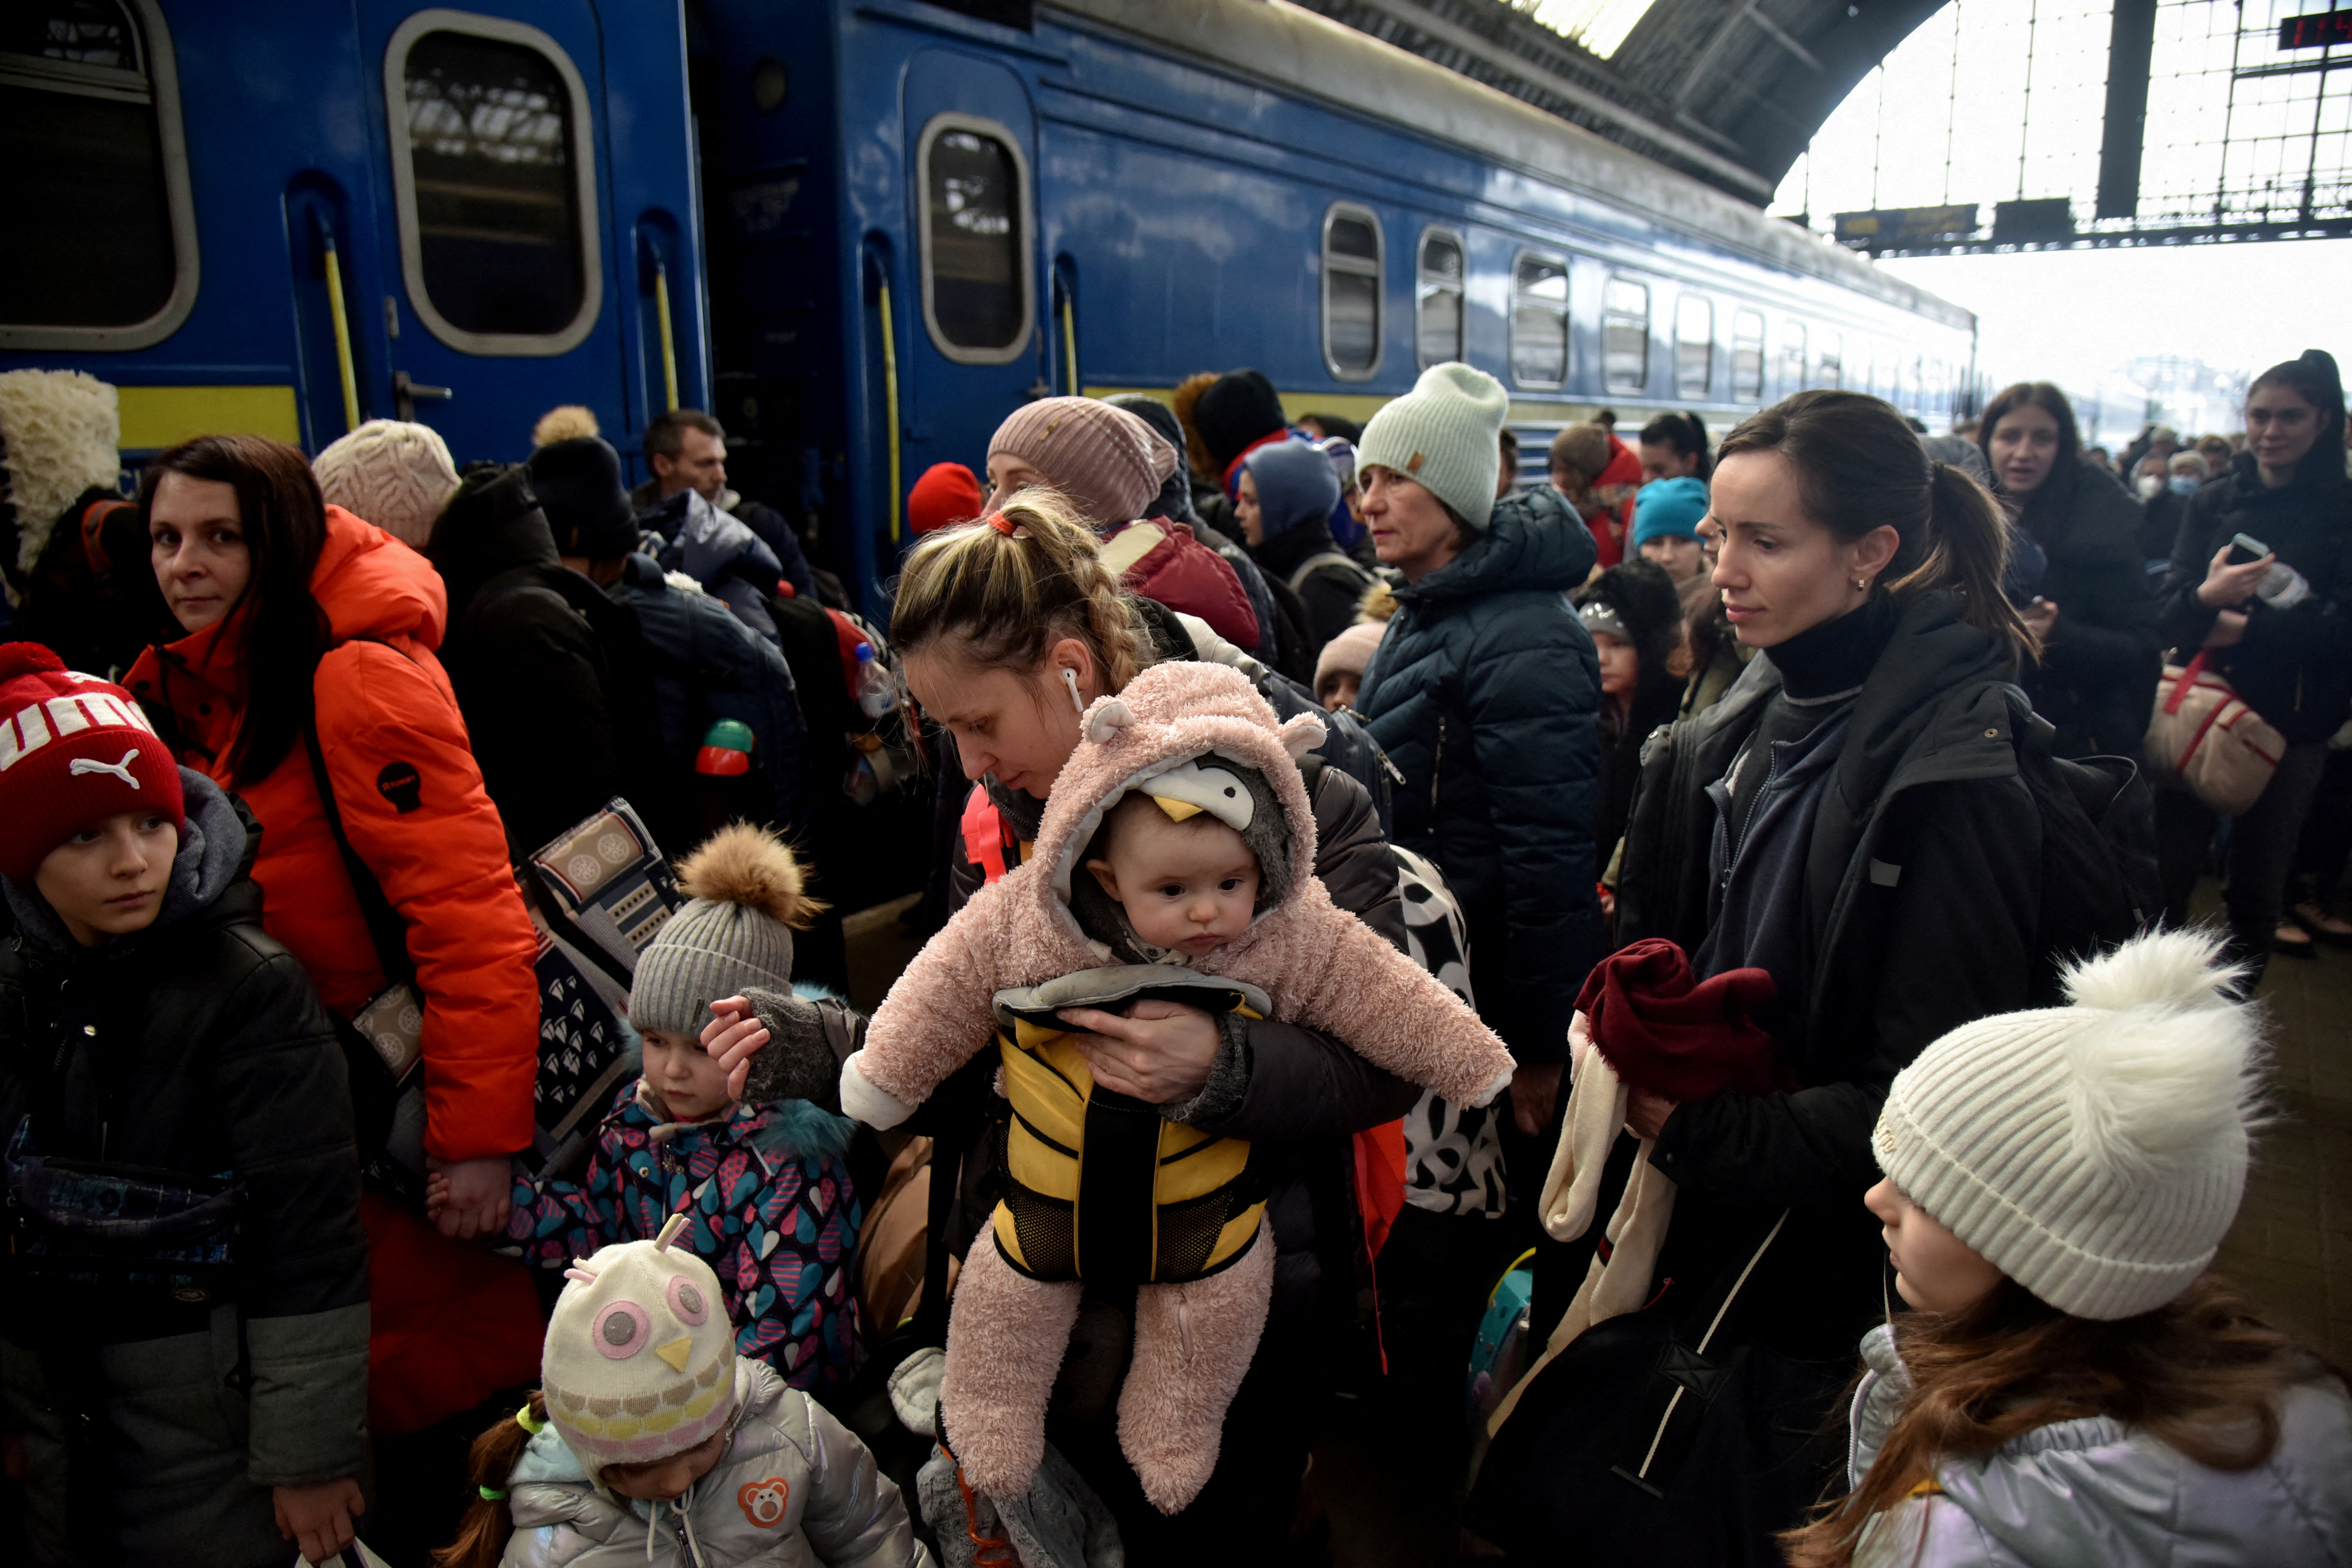 Al menos cinco millones de ucranianos debieron abandonar su país por la brutal invasión ordenada por Vladimir Putin. Muchos de ellos no podrán regresar o lo harán en un país devastado por las bombas y los abusos (Reuters)